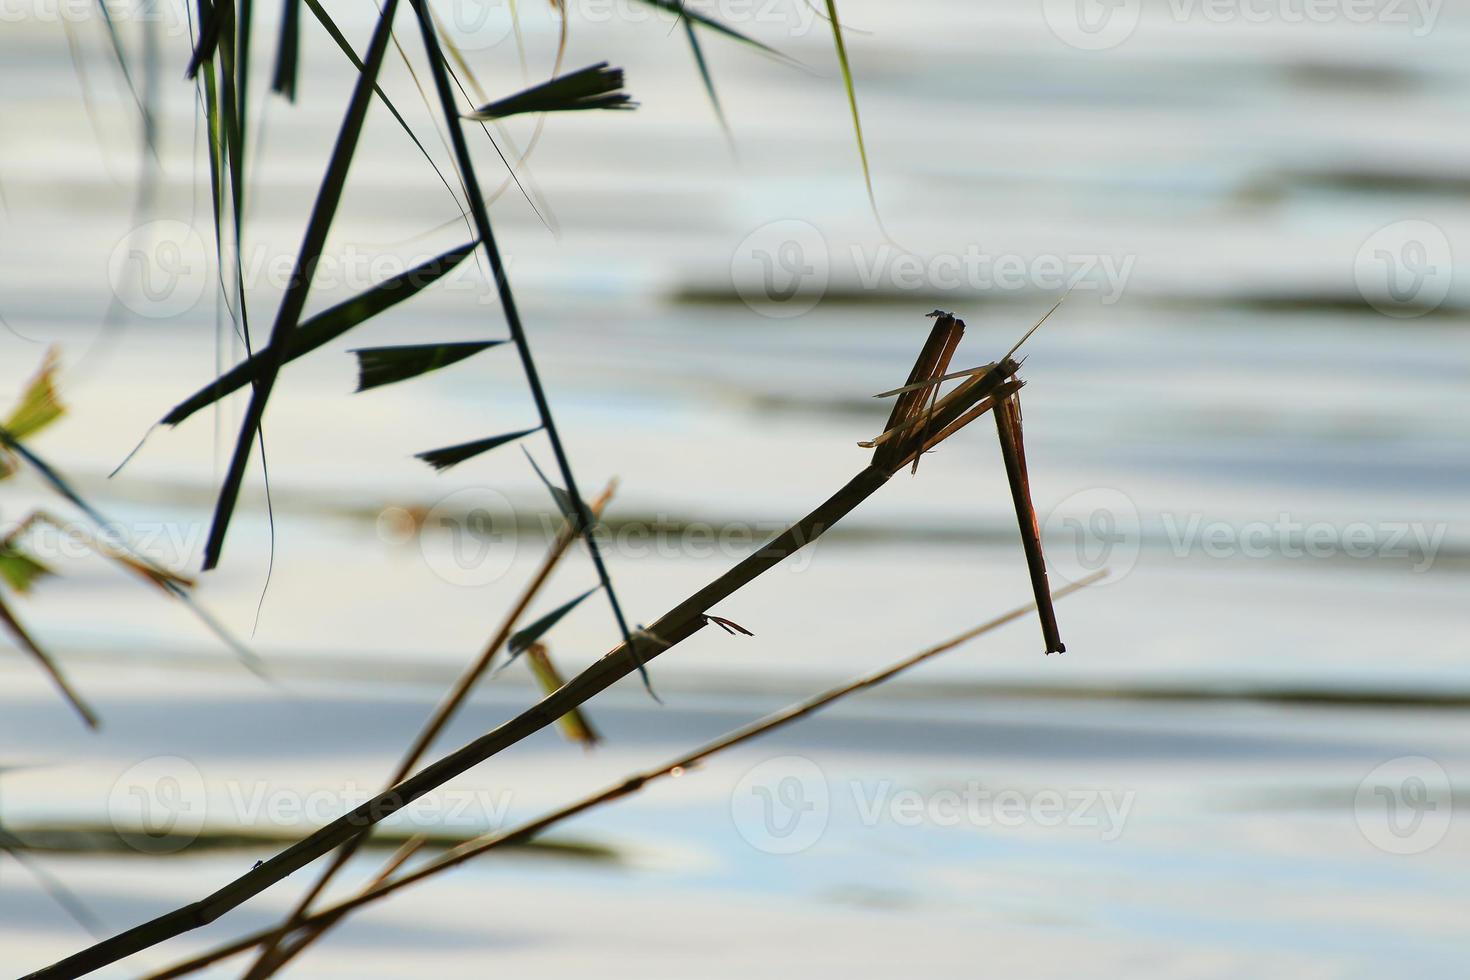 silueta de hierba y hojas al atardecer cerca del río foto